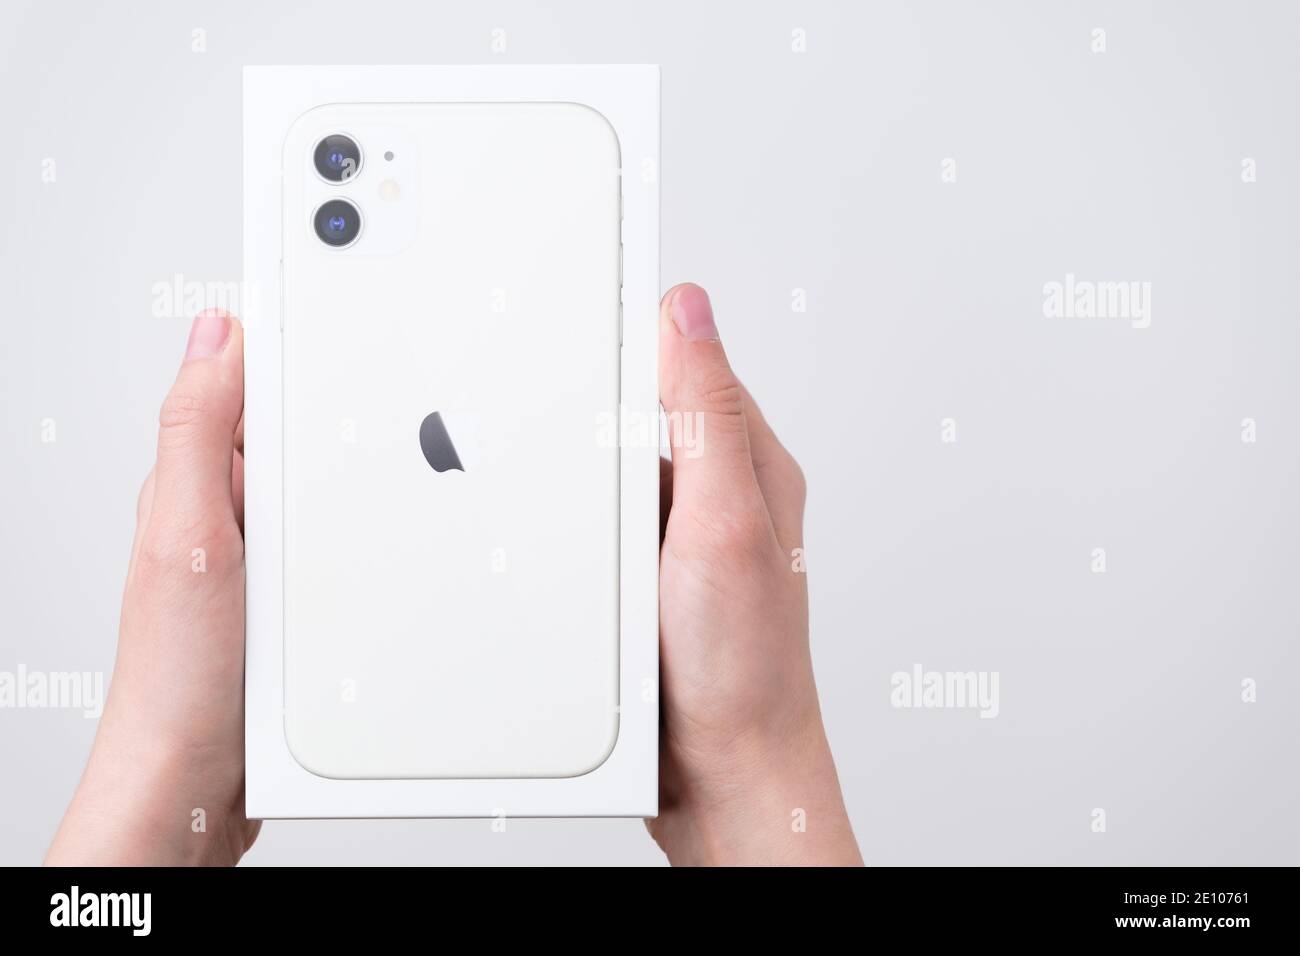 تحول يستفز أتمنى لك كل خير  Iphone 11 White Background High Resolution Stock Photography and Images -  Alamy